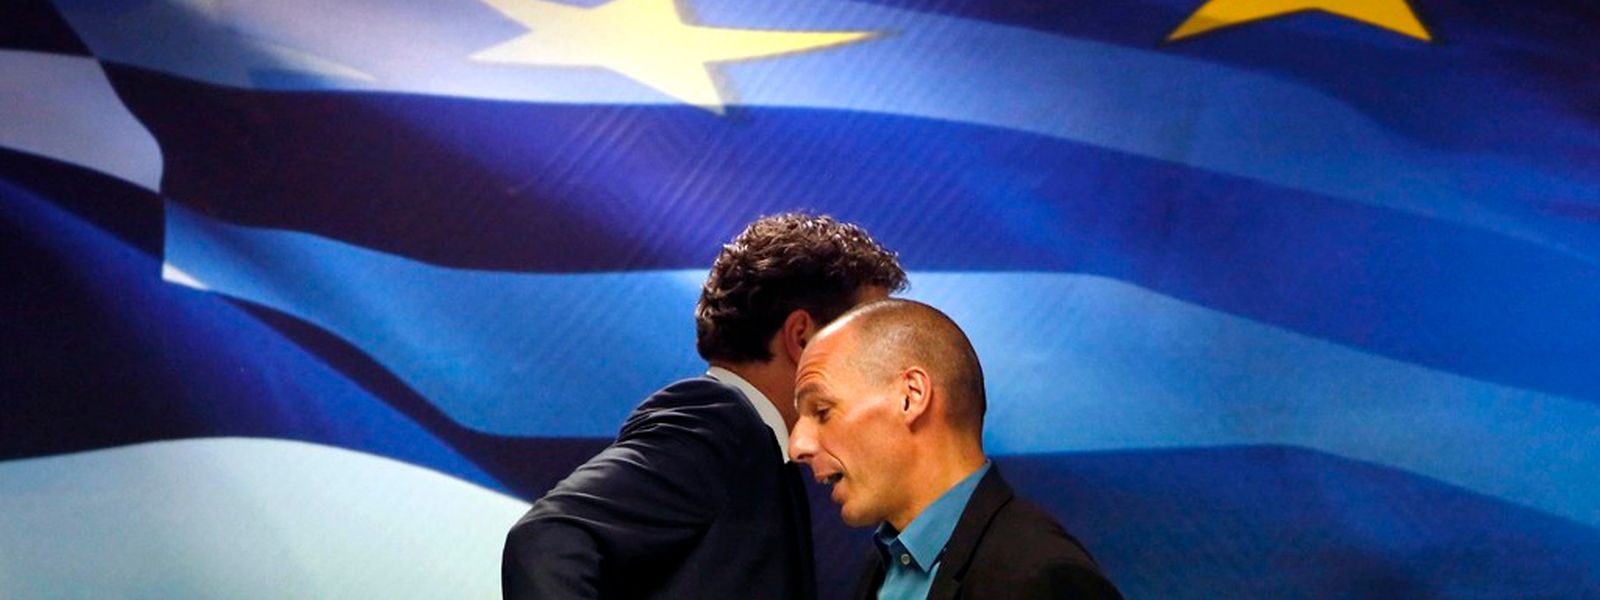 Vergangene Woche kam es zu einem öffentlichen Eklat zwischen dem griechischen Finanzminister und dem Chef der Eurogruppe.